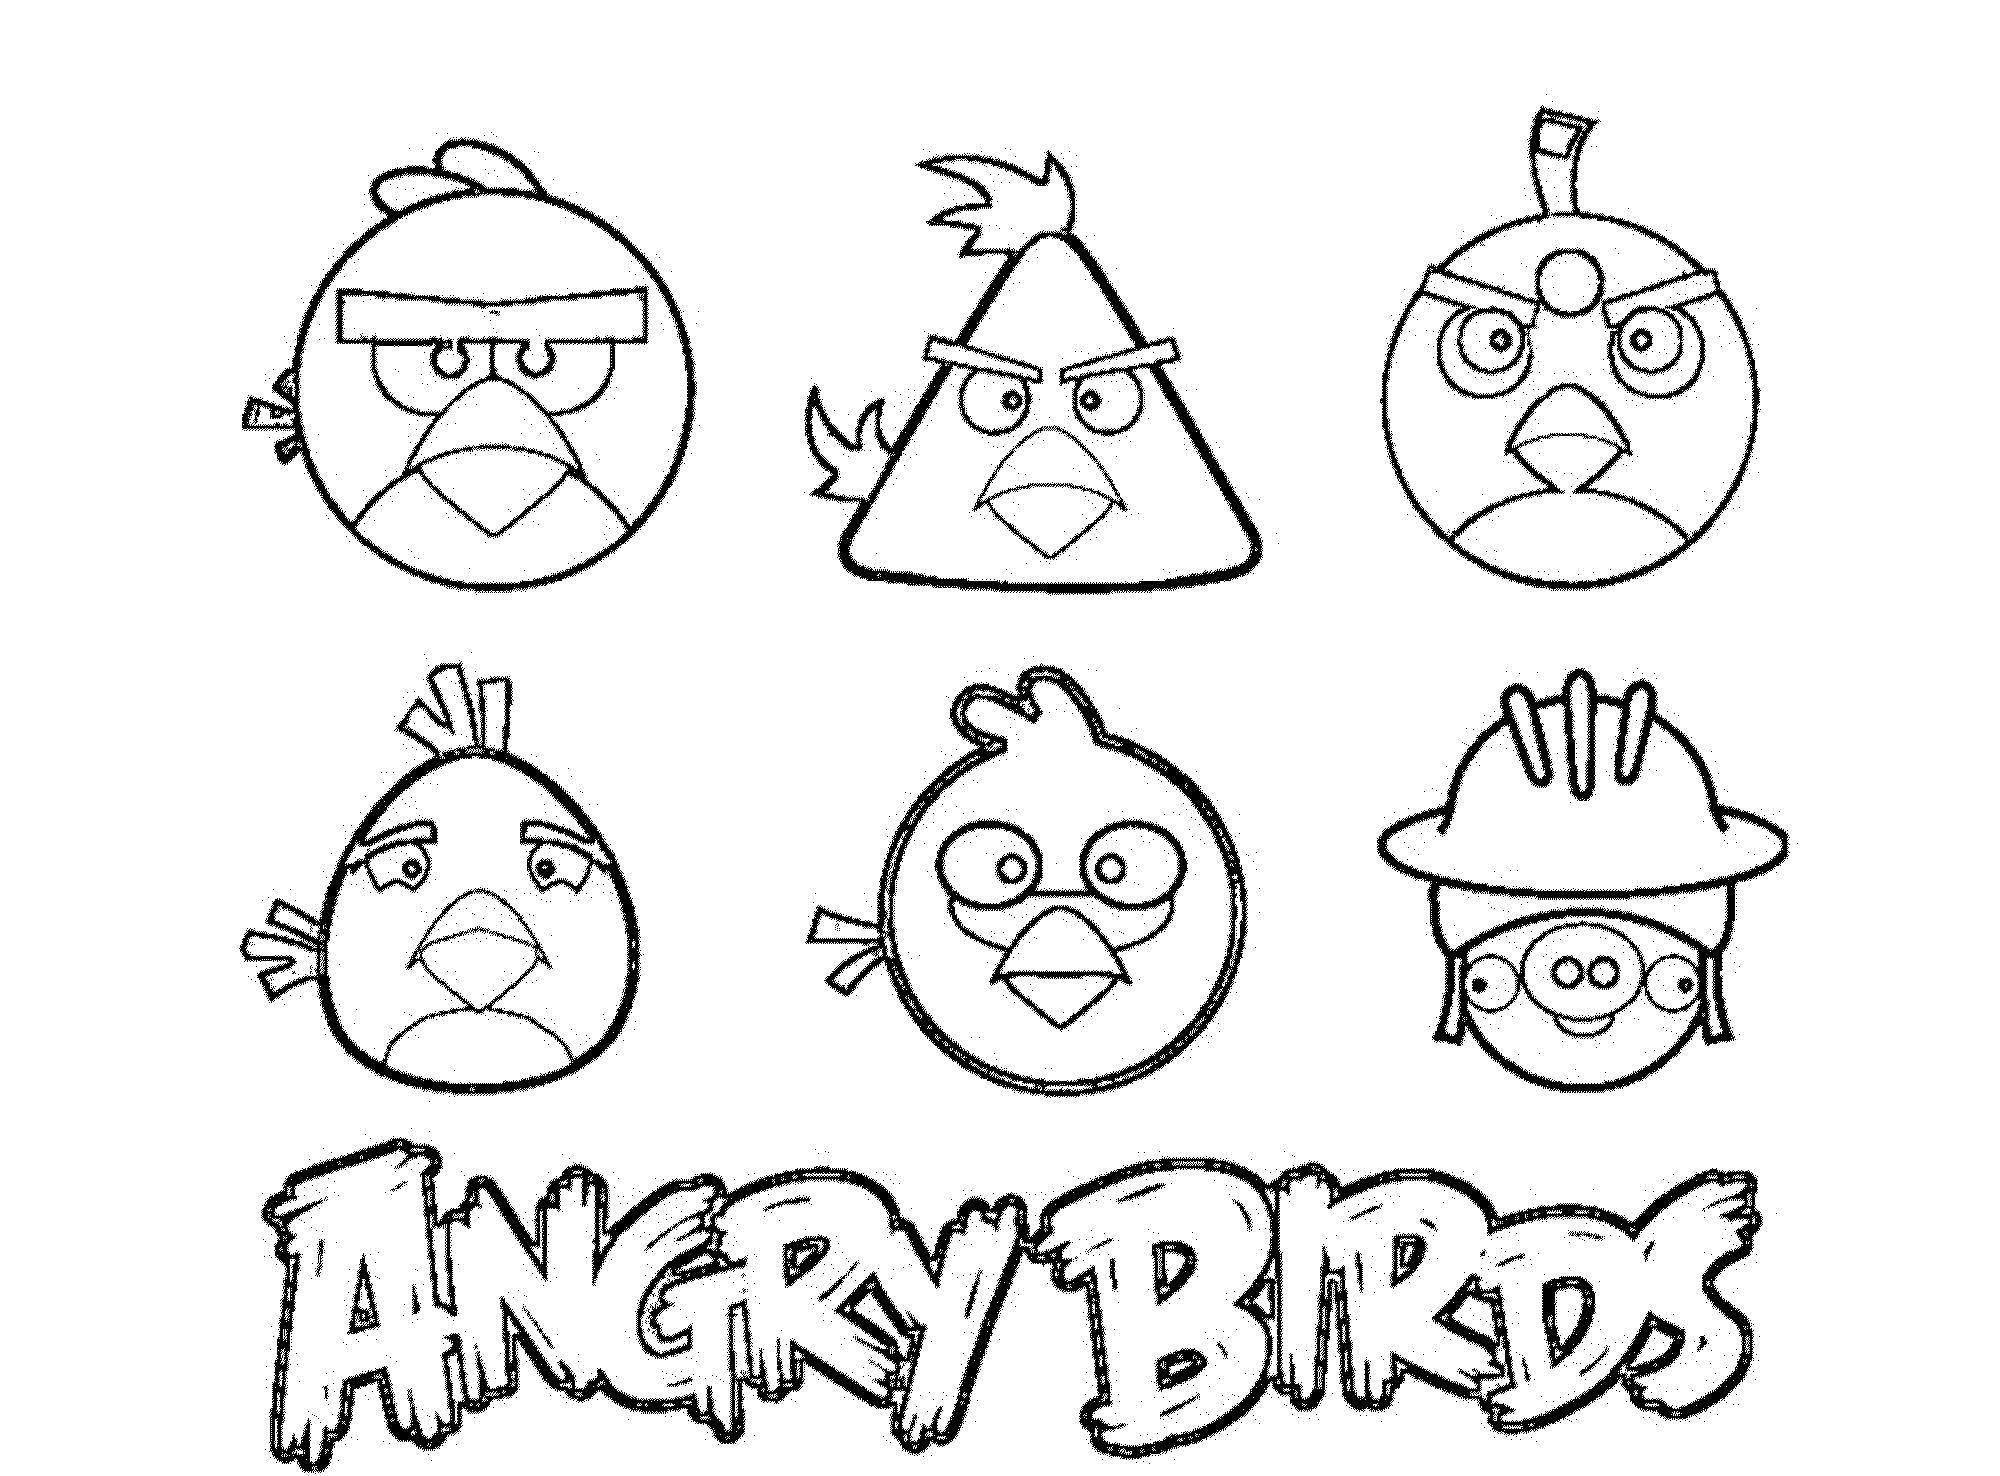 Название: Раскраска Angry birds. Категория: angry birds. Теги: птицы, angry birds, свинья.